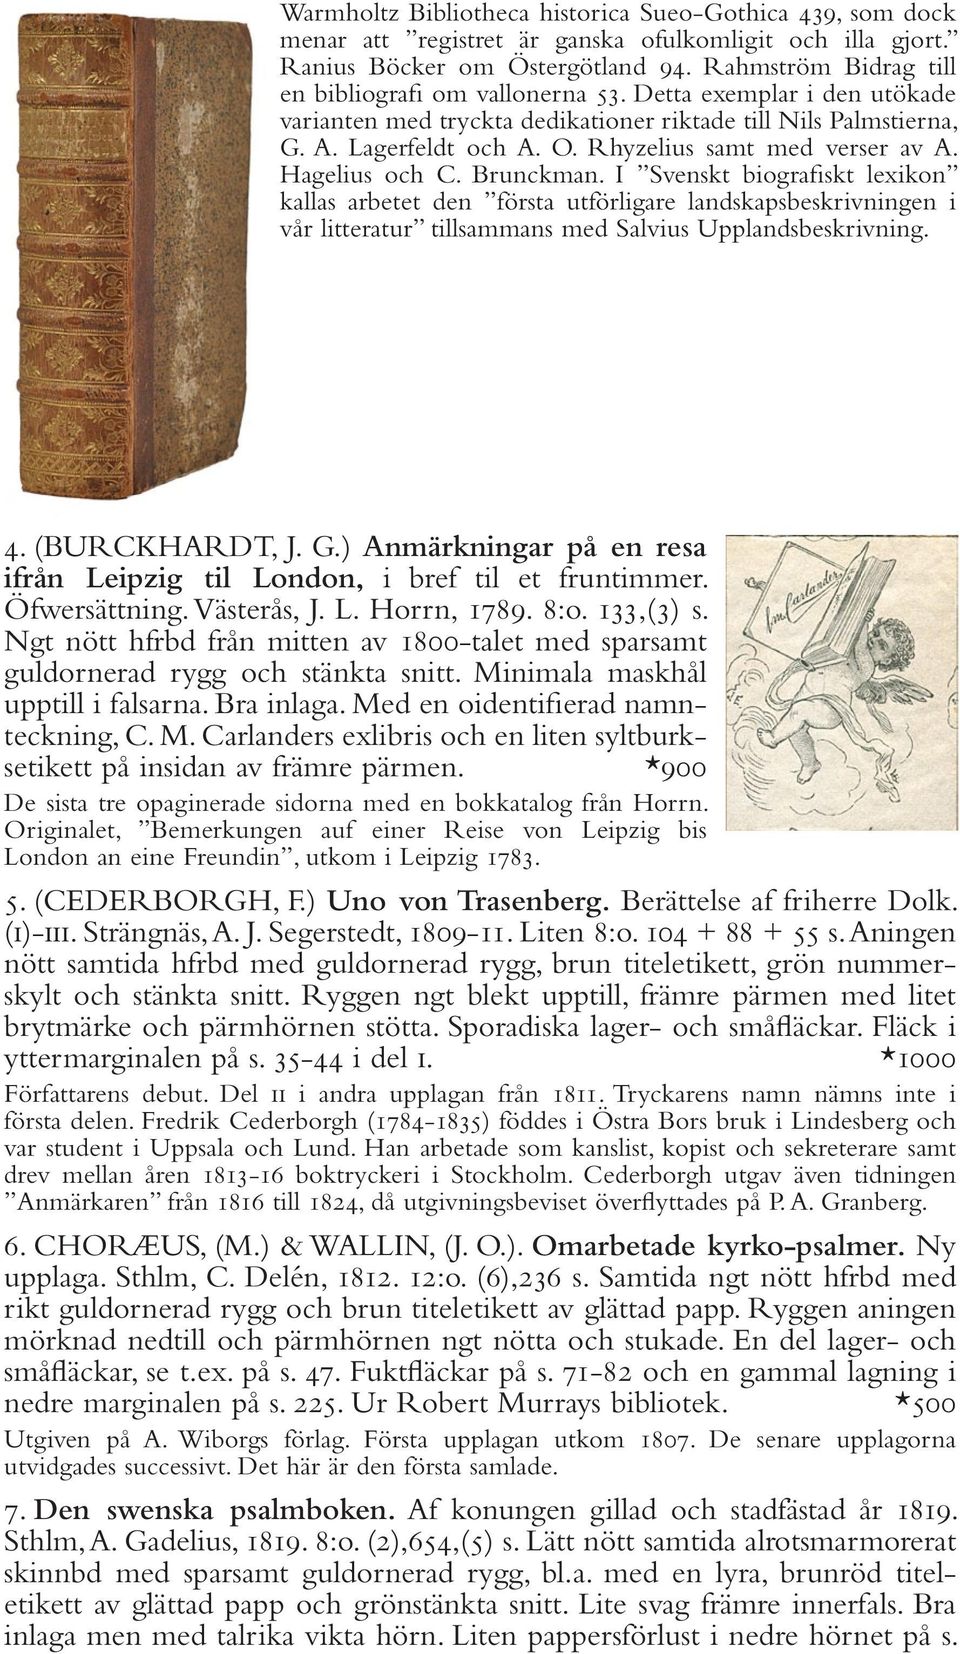 Rhyzelius samt med verser av A. Hagelius och C. Brunckman.